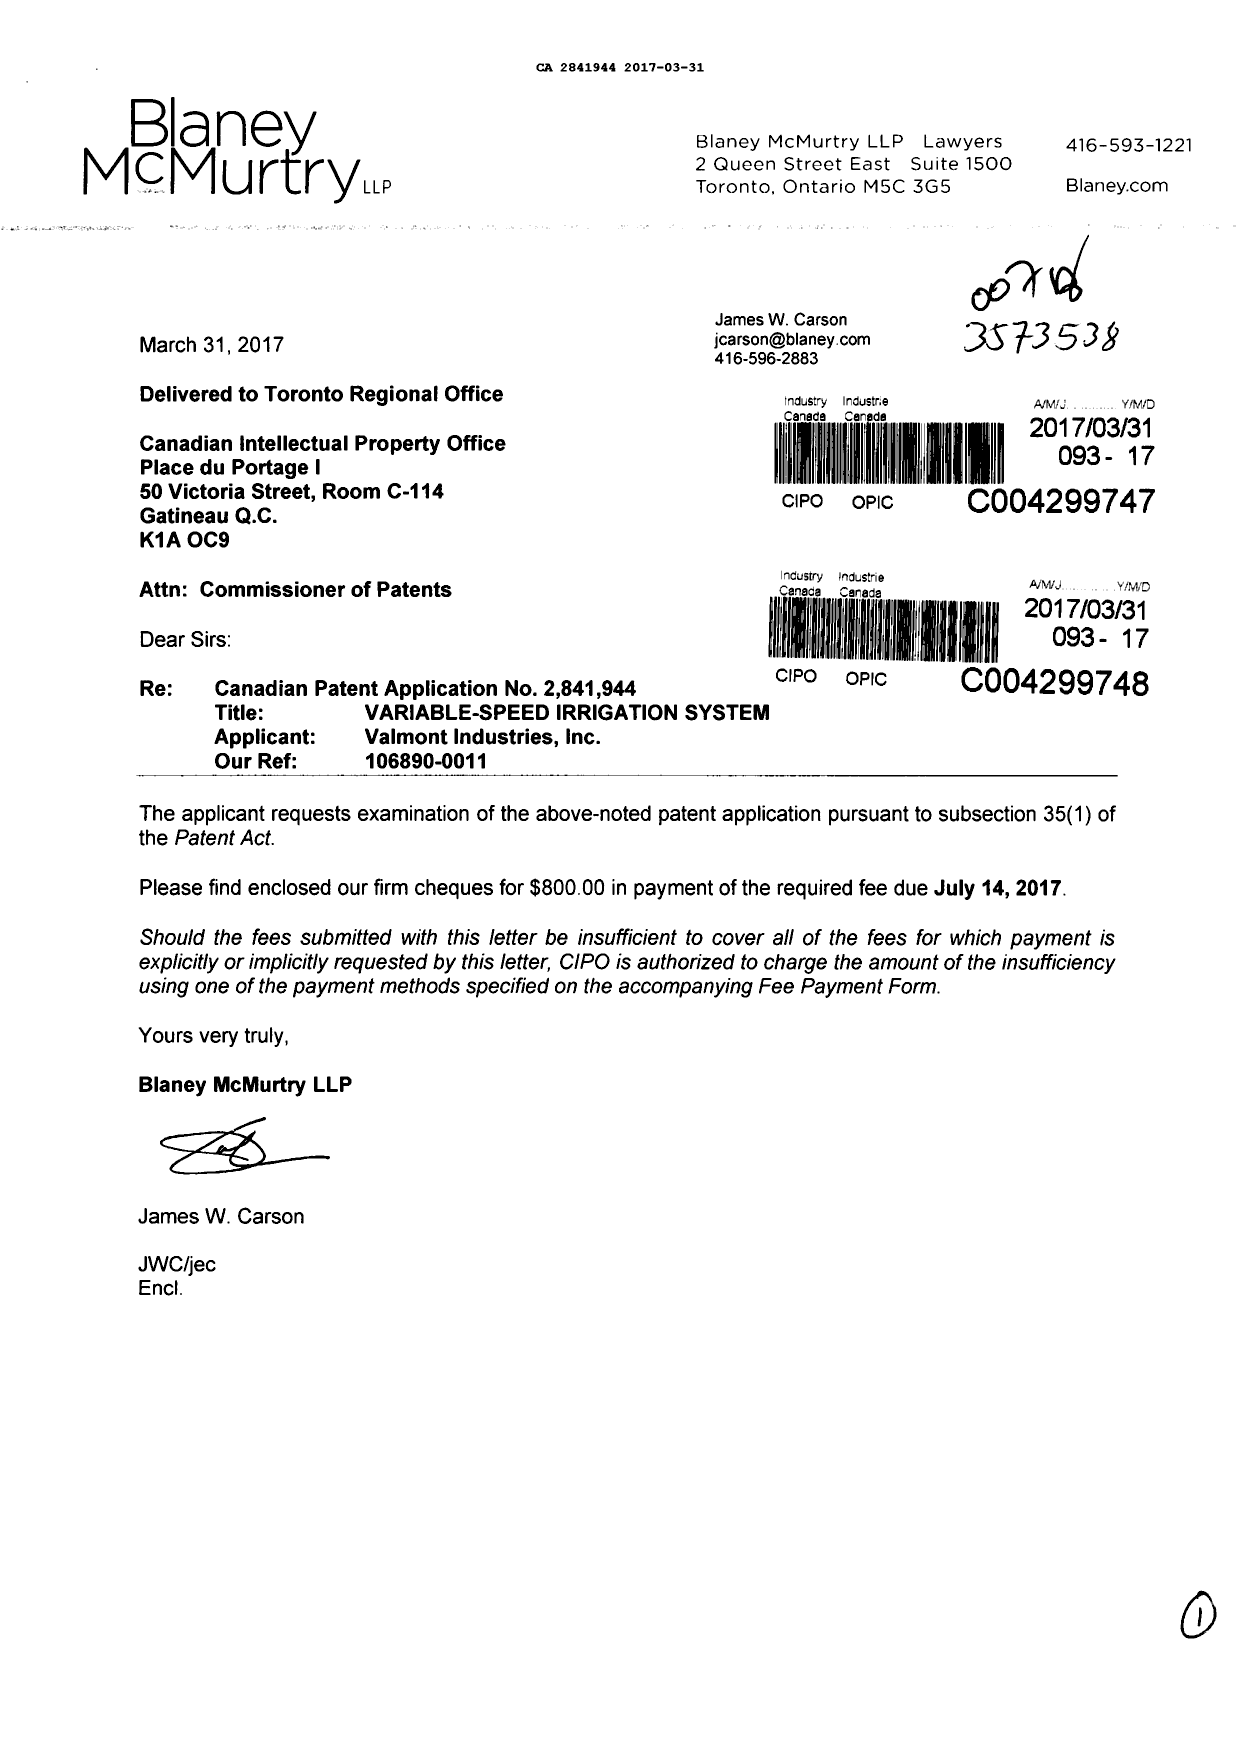 Document de brevet canadien 2841944. Requête d'examen 20170331. Image 1 de 1